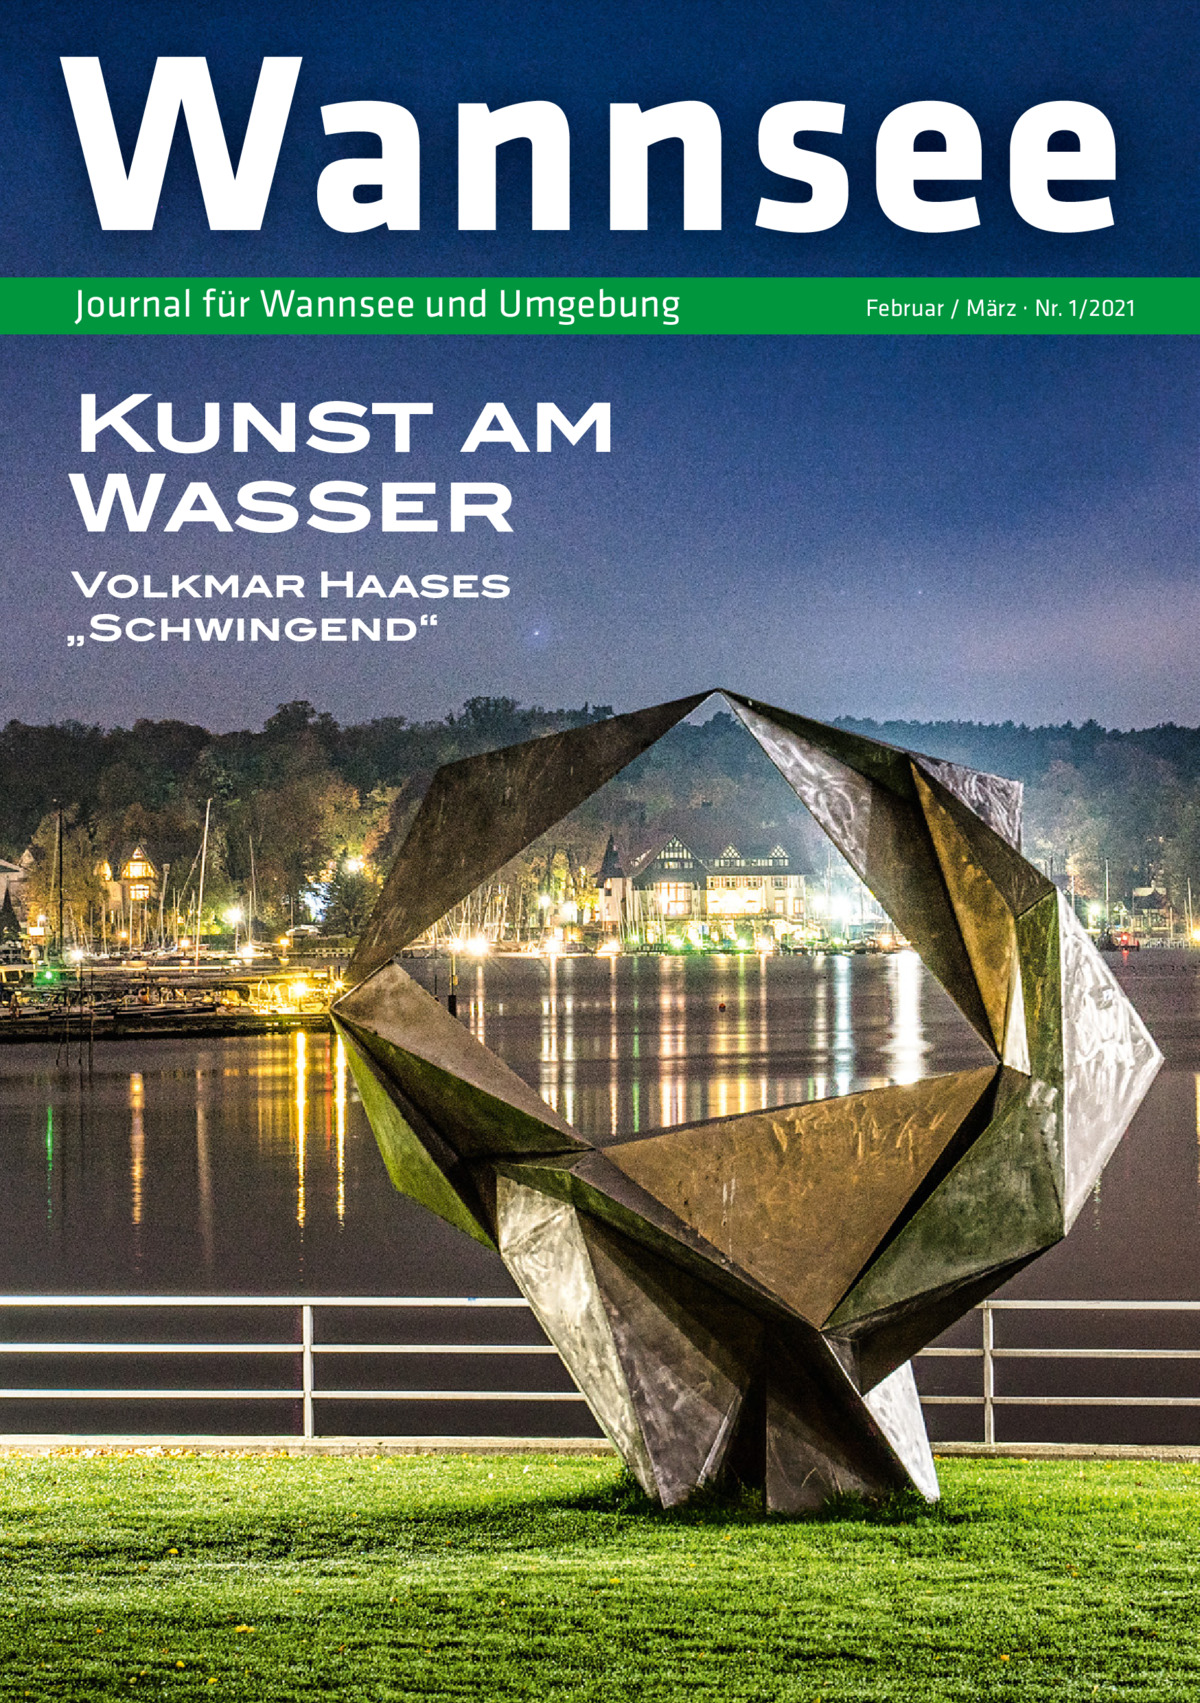 Wannsee Journal für Wannsee und Umgebung  Kunst am Wasser Volkmar Haases „Schwingend“  Februar / März · Nr. 1/2021